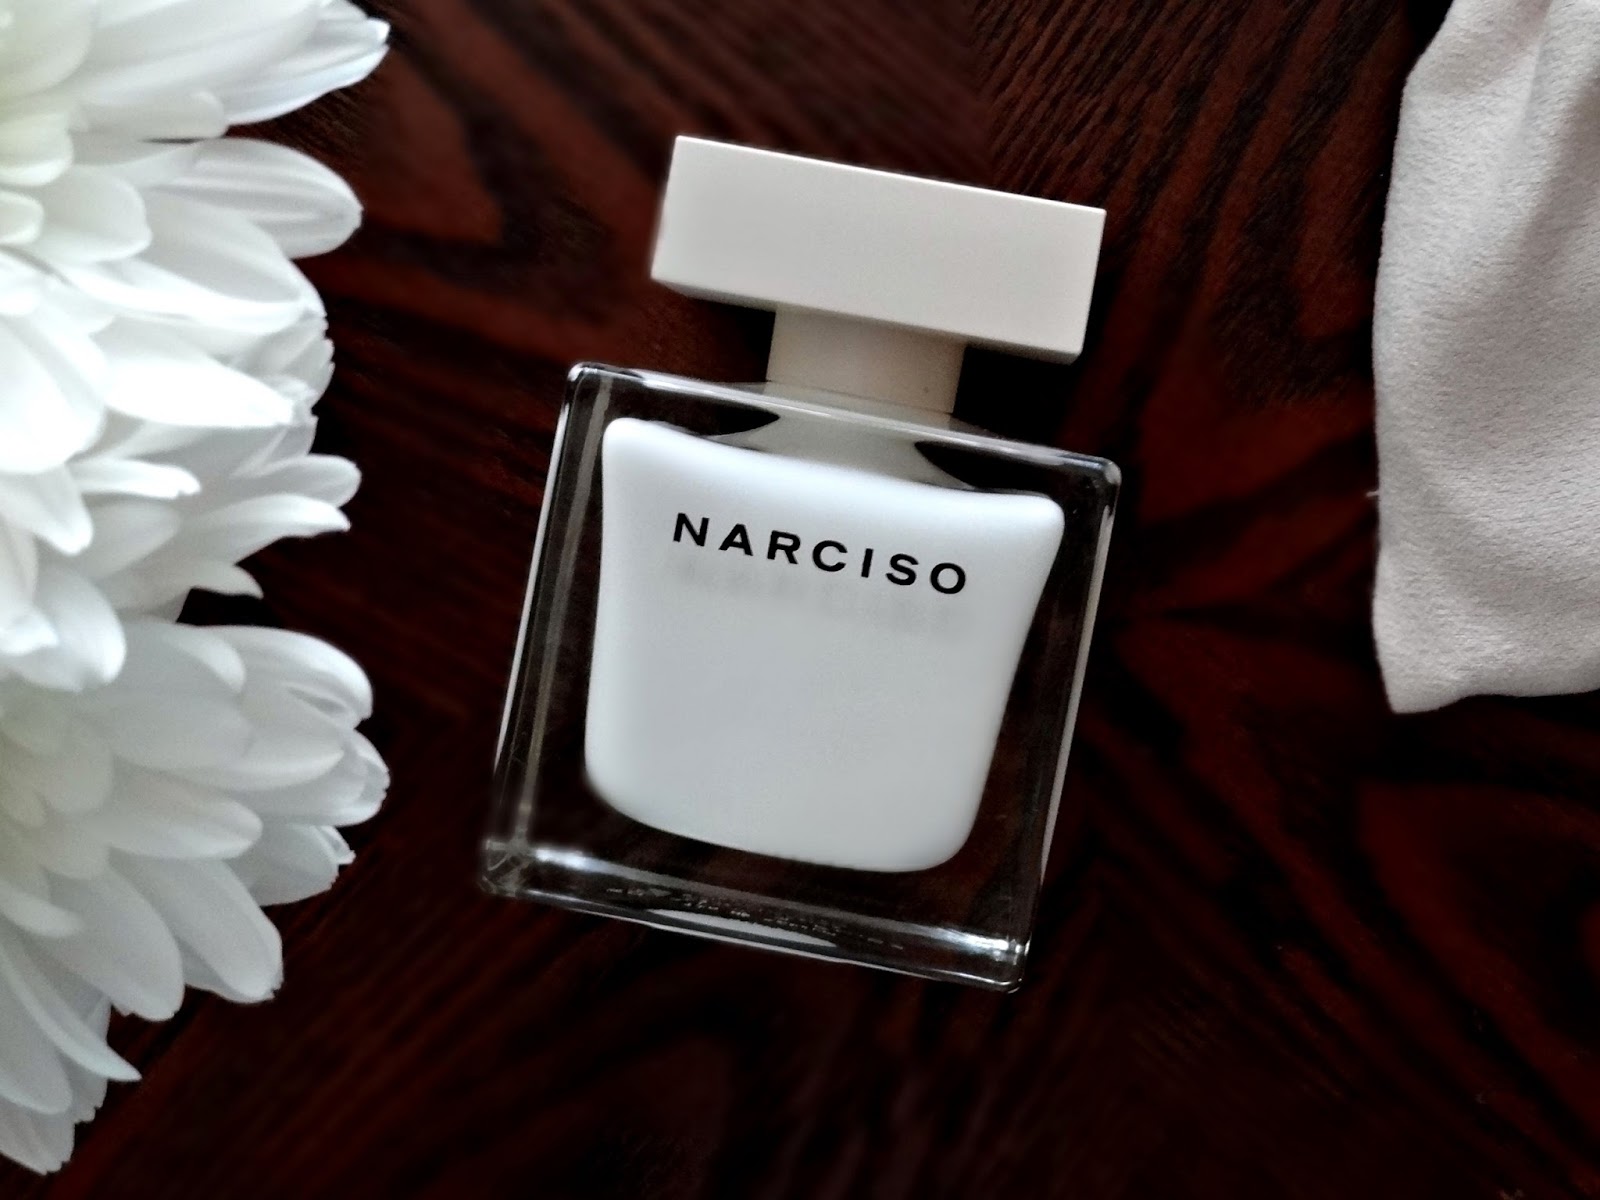 NARCISO by Narciso Rodriguez Eau de Parfum